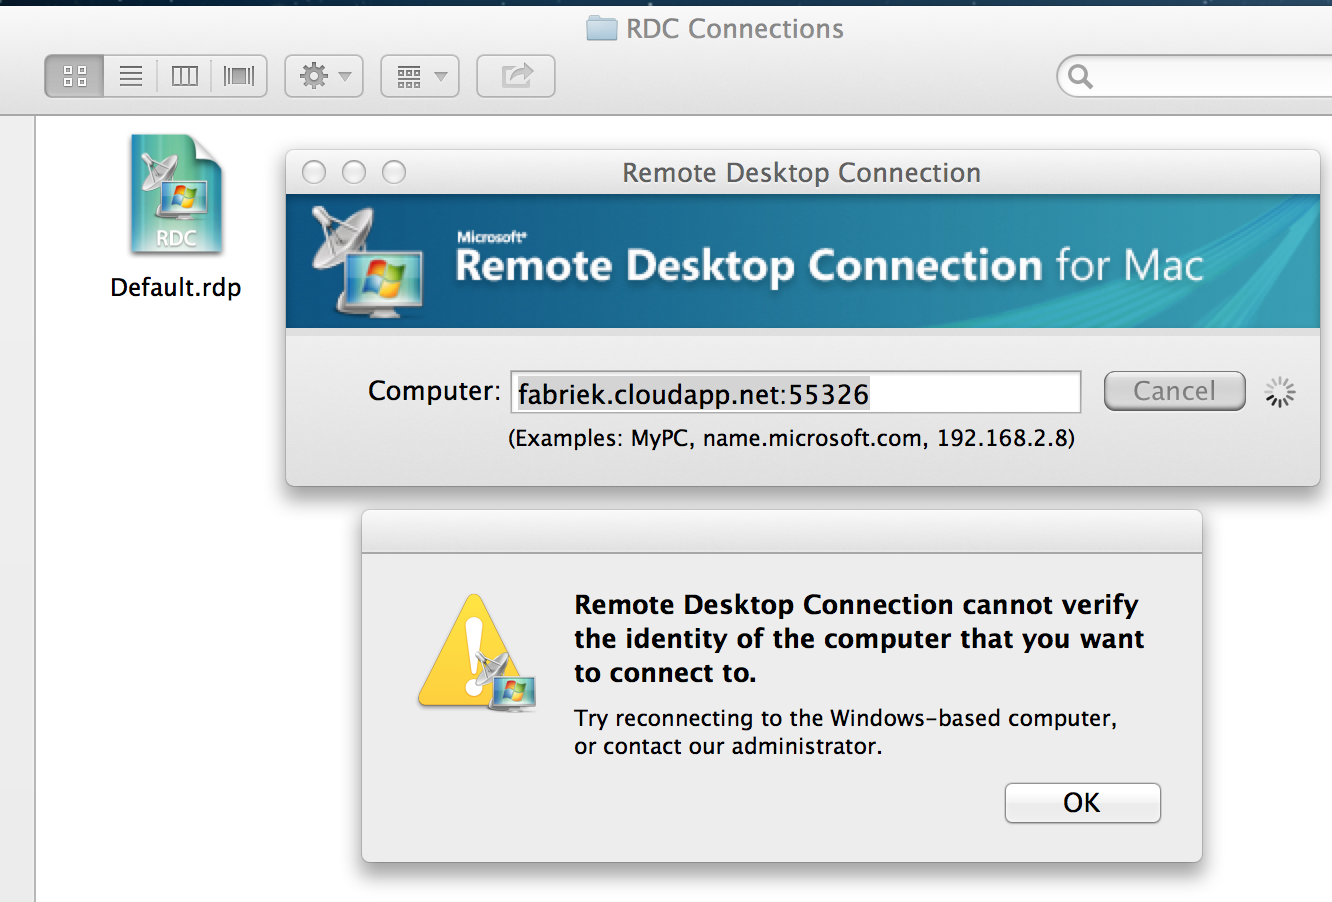 is remote desktop connection app for mac legit?